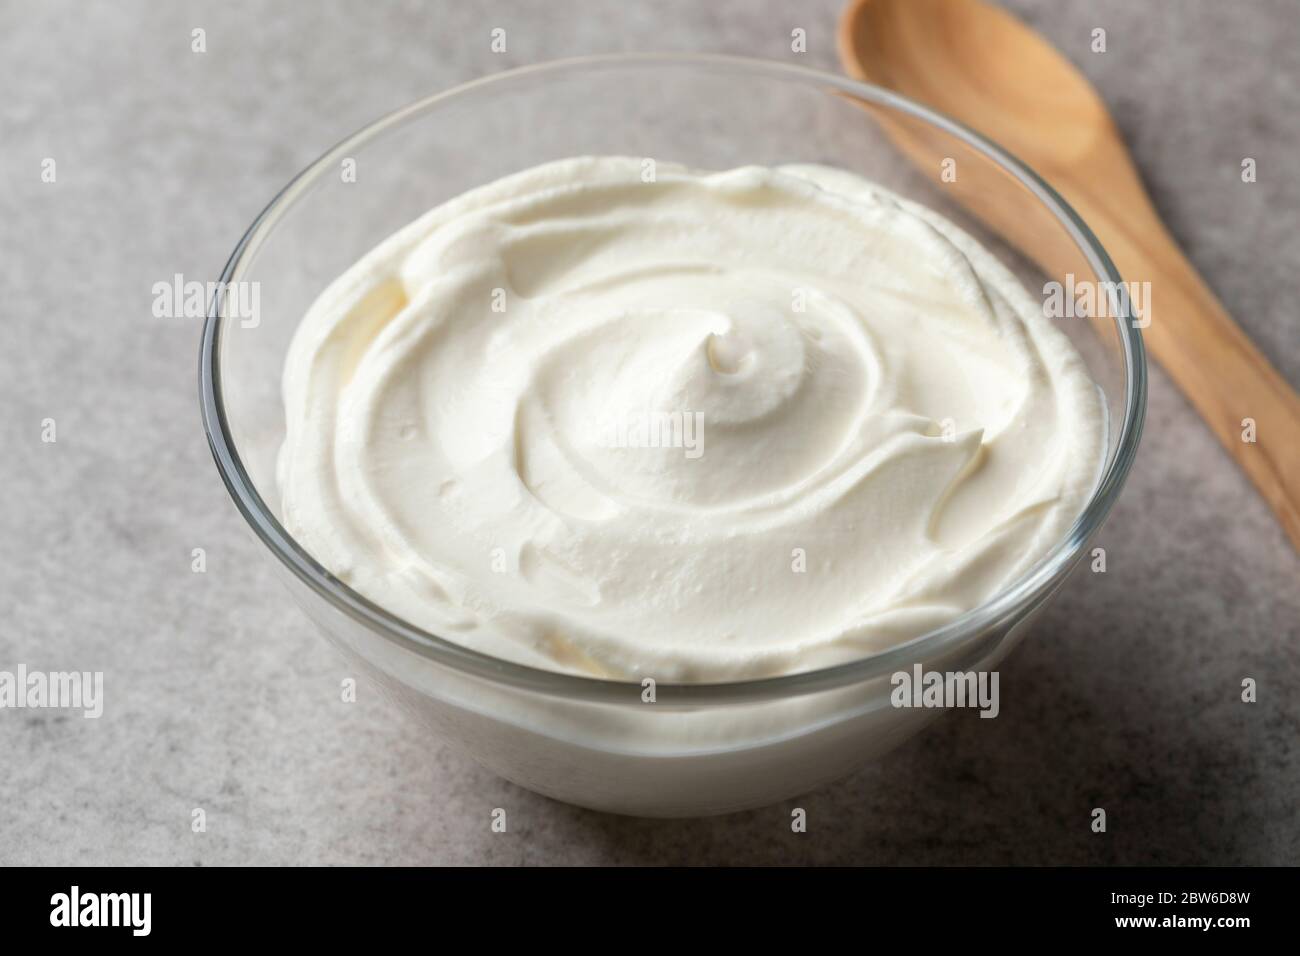 Crema fresca e semplice fraiche in una ciotola come ingrediente Foto Stock